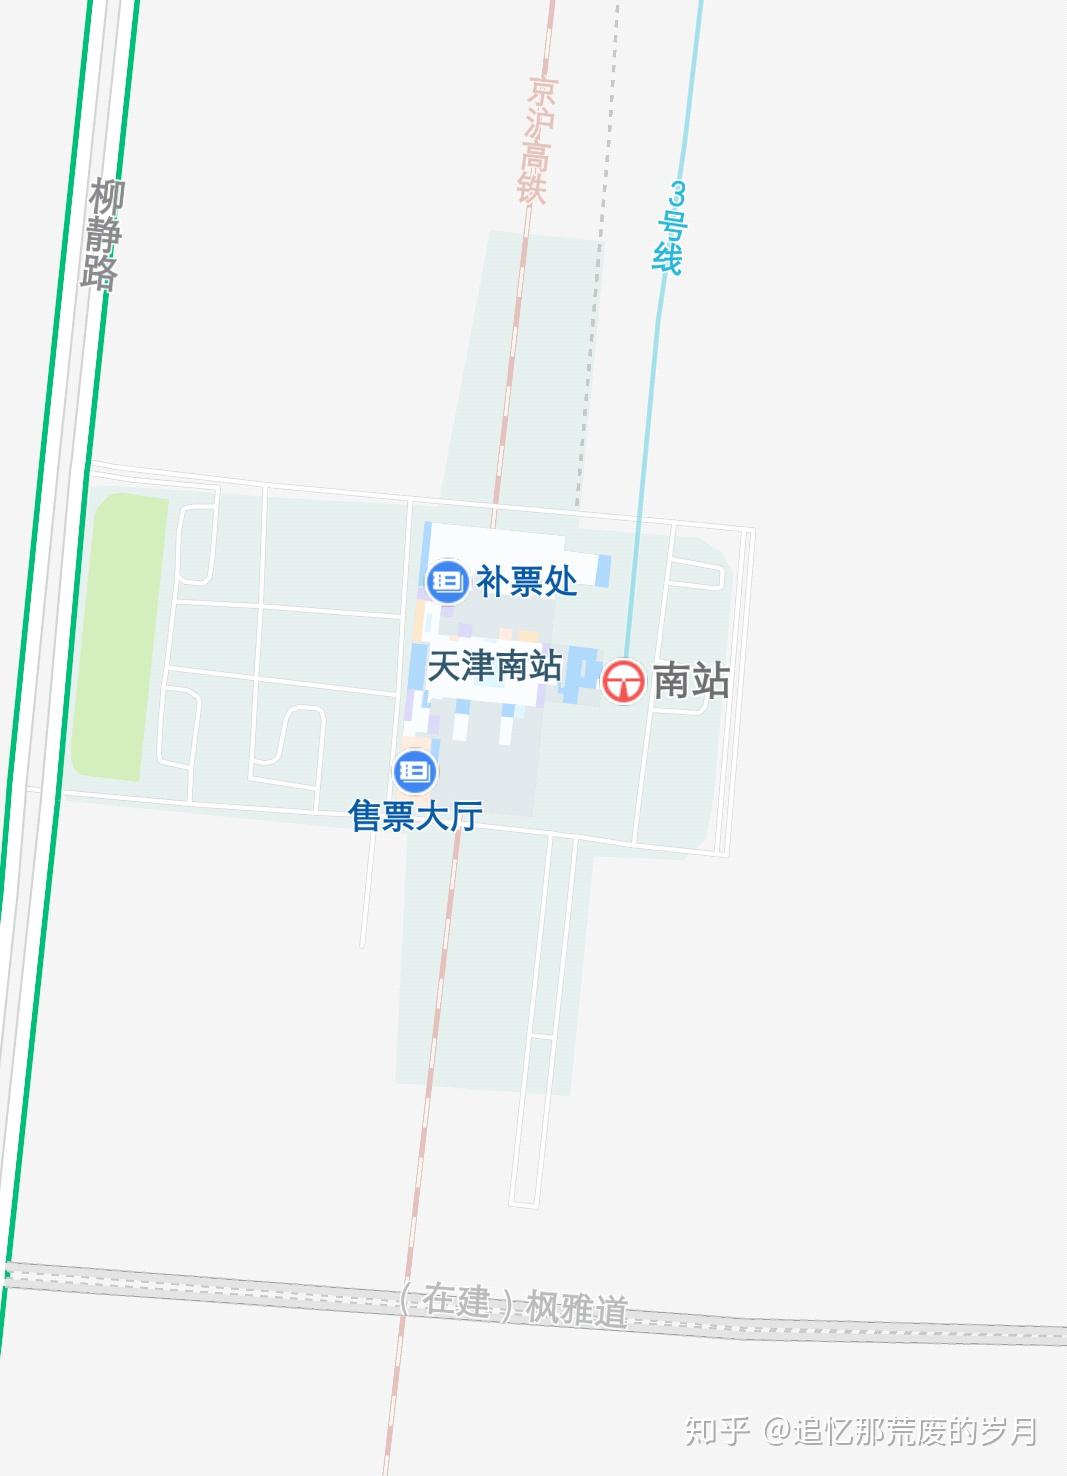 那些容易跑错的铁路车站:天津篇(含天津铁路枢纽配线详解)